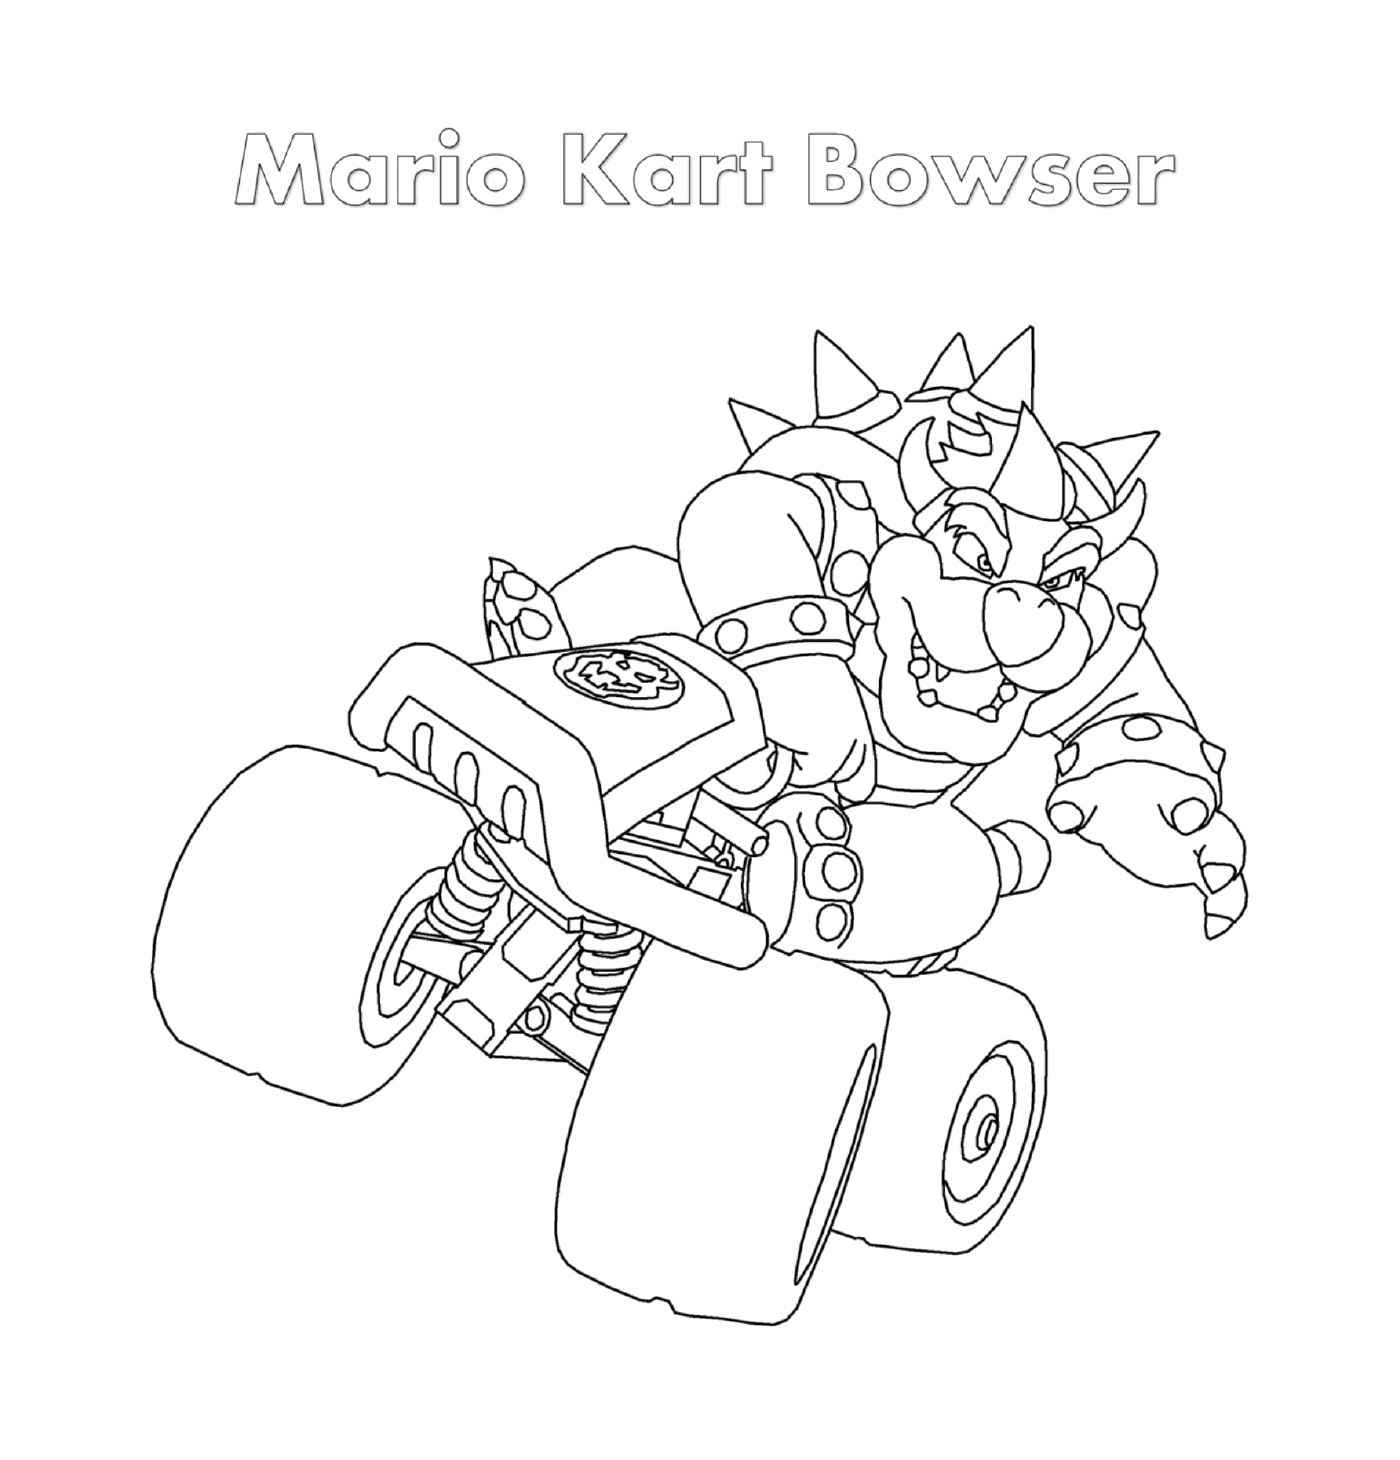  Bowser in Mario Kart de Nintendo 